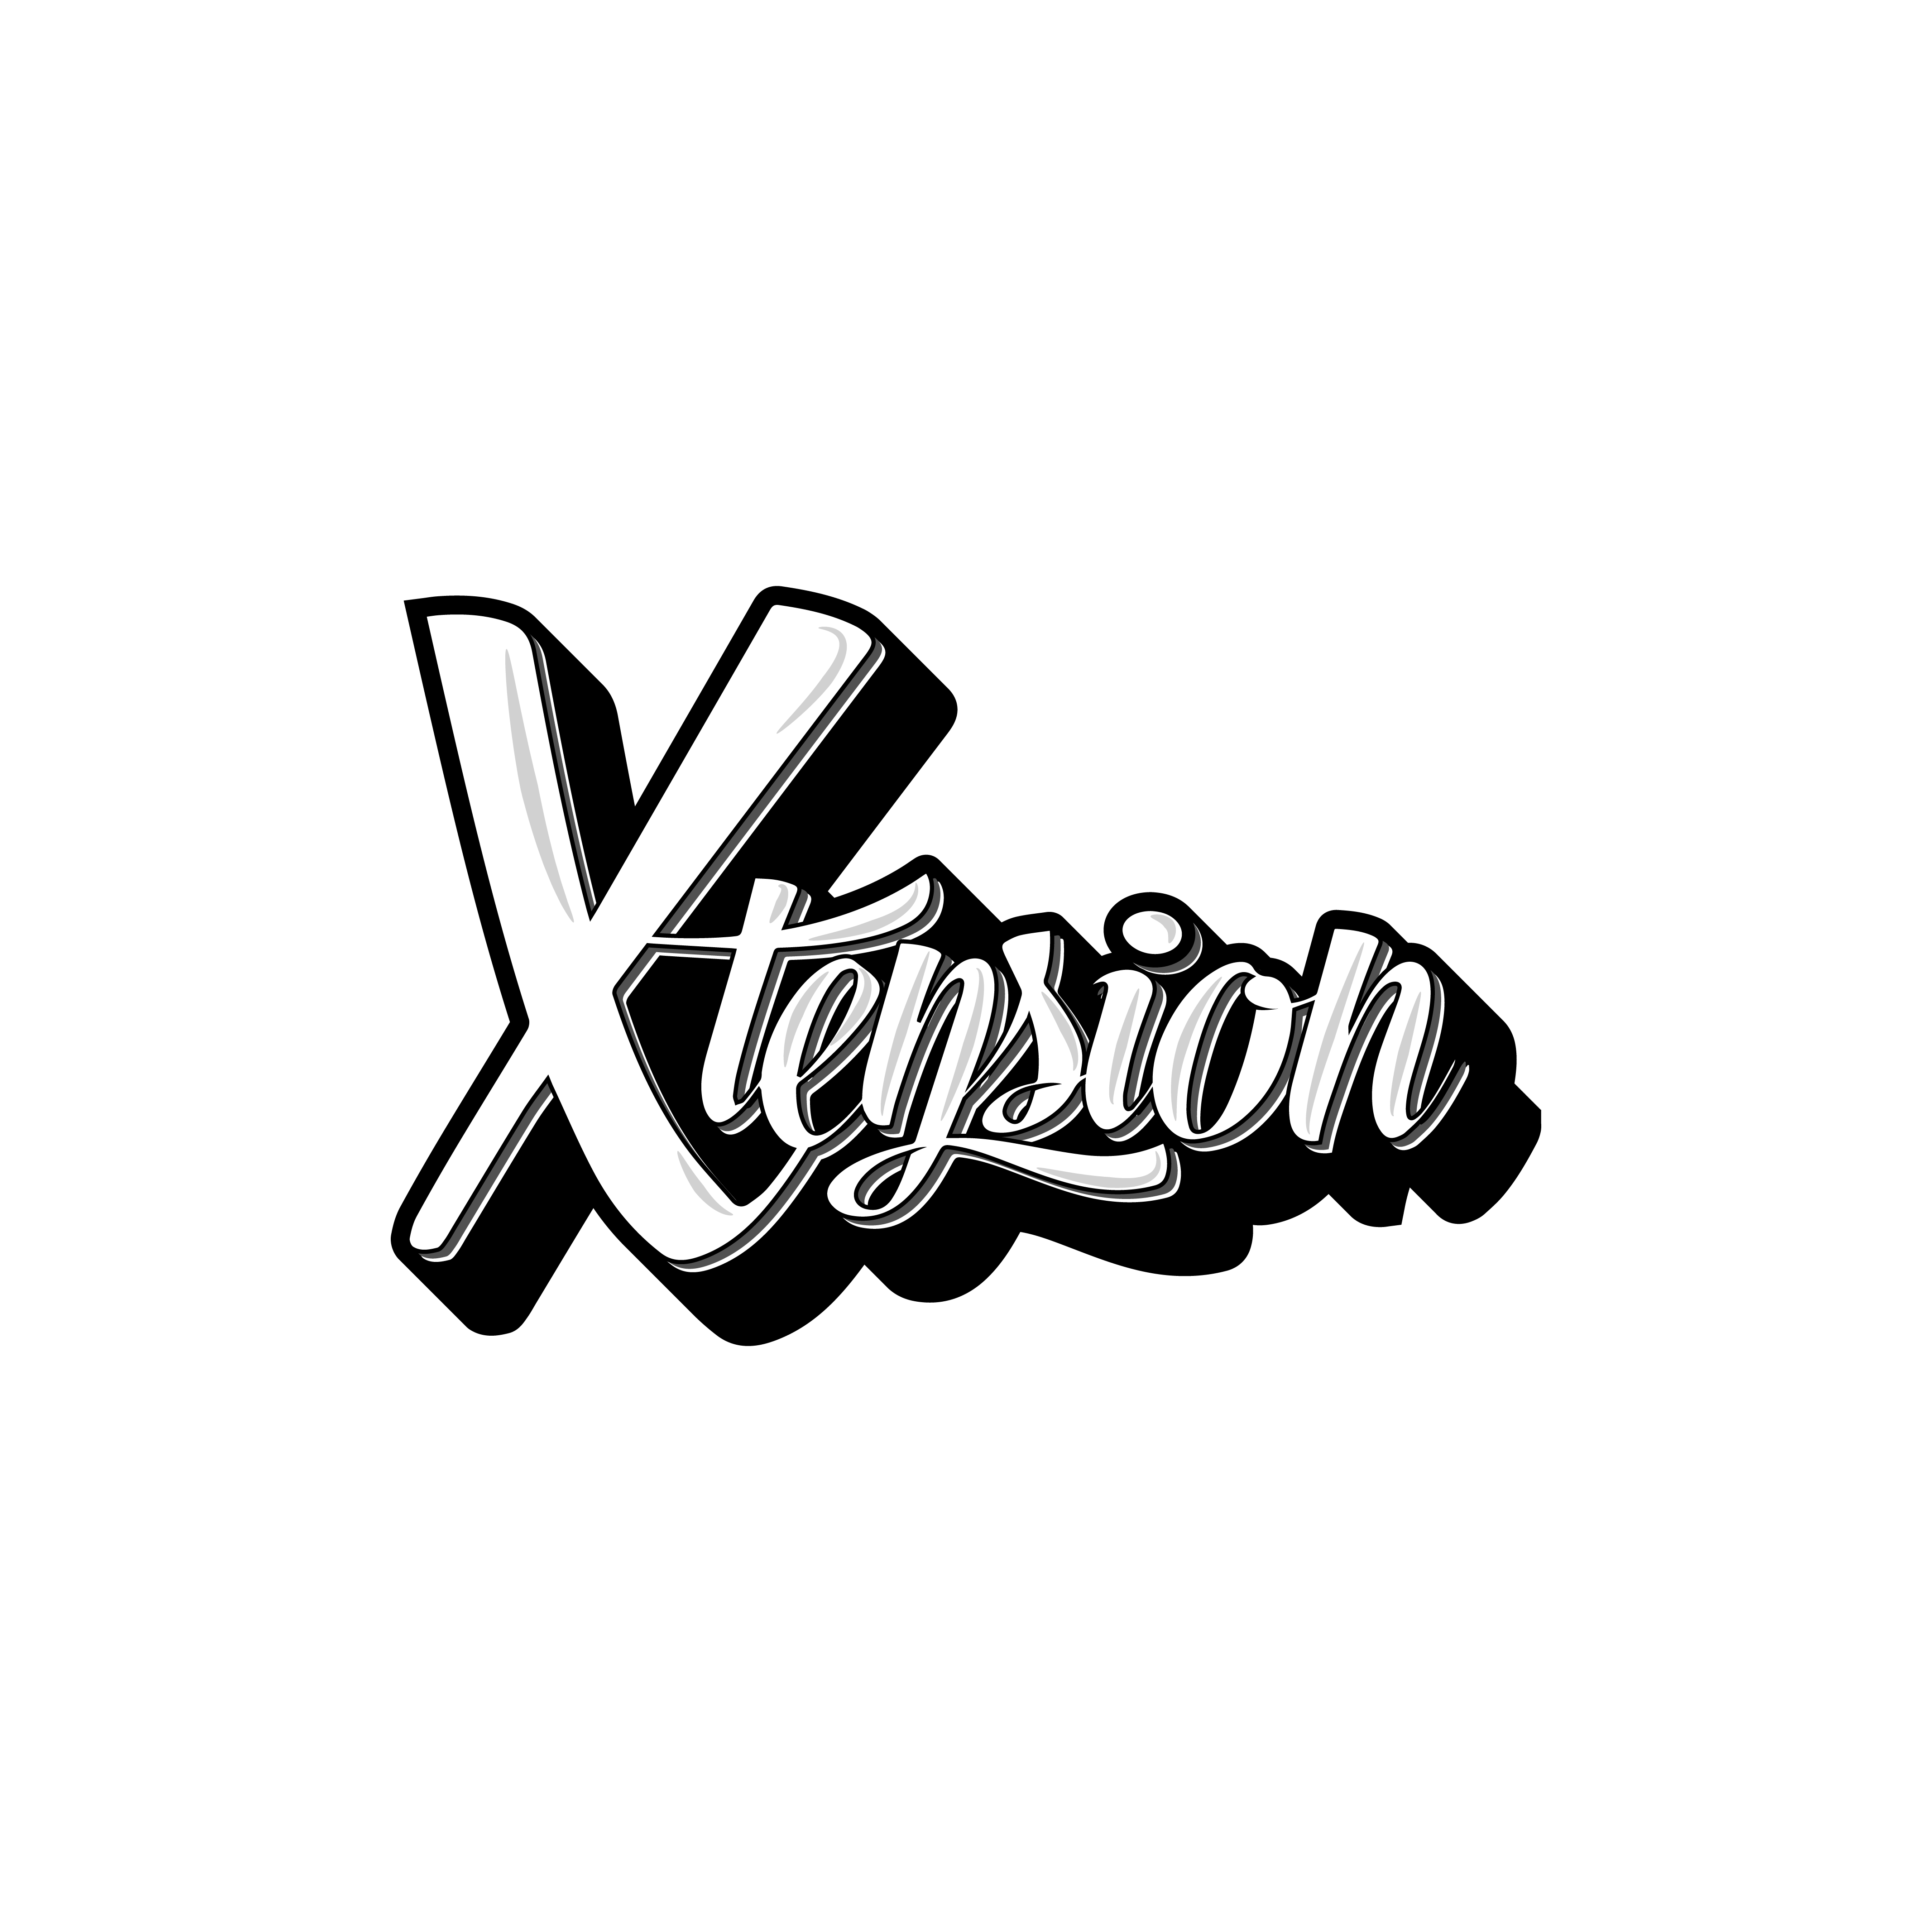 Xtension logo